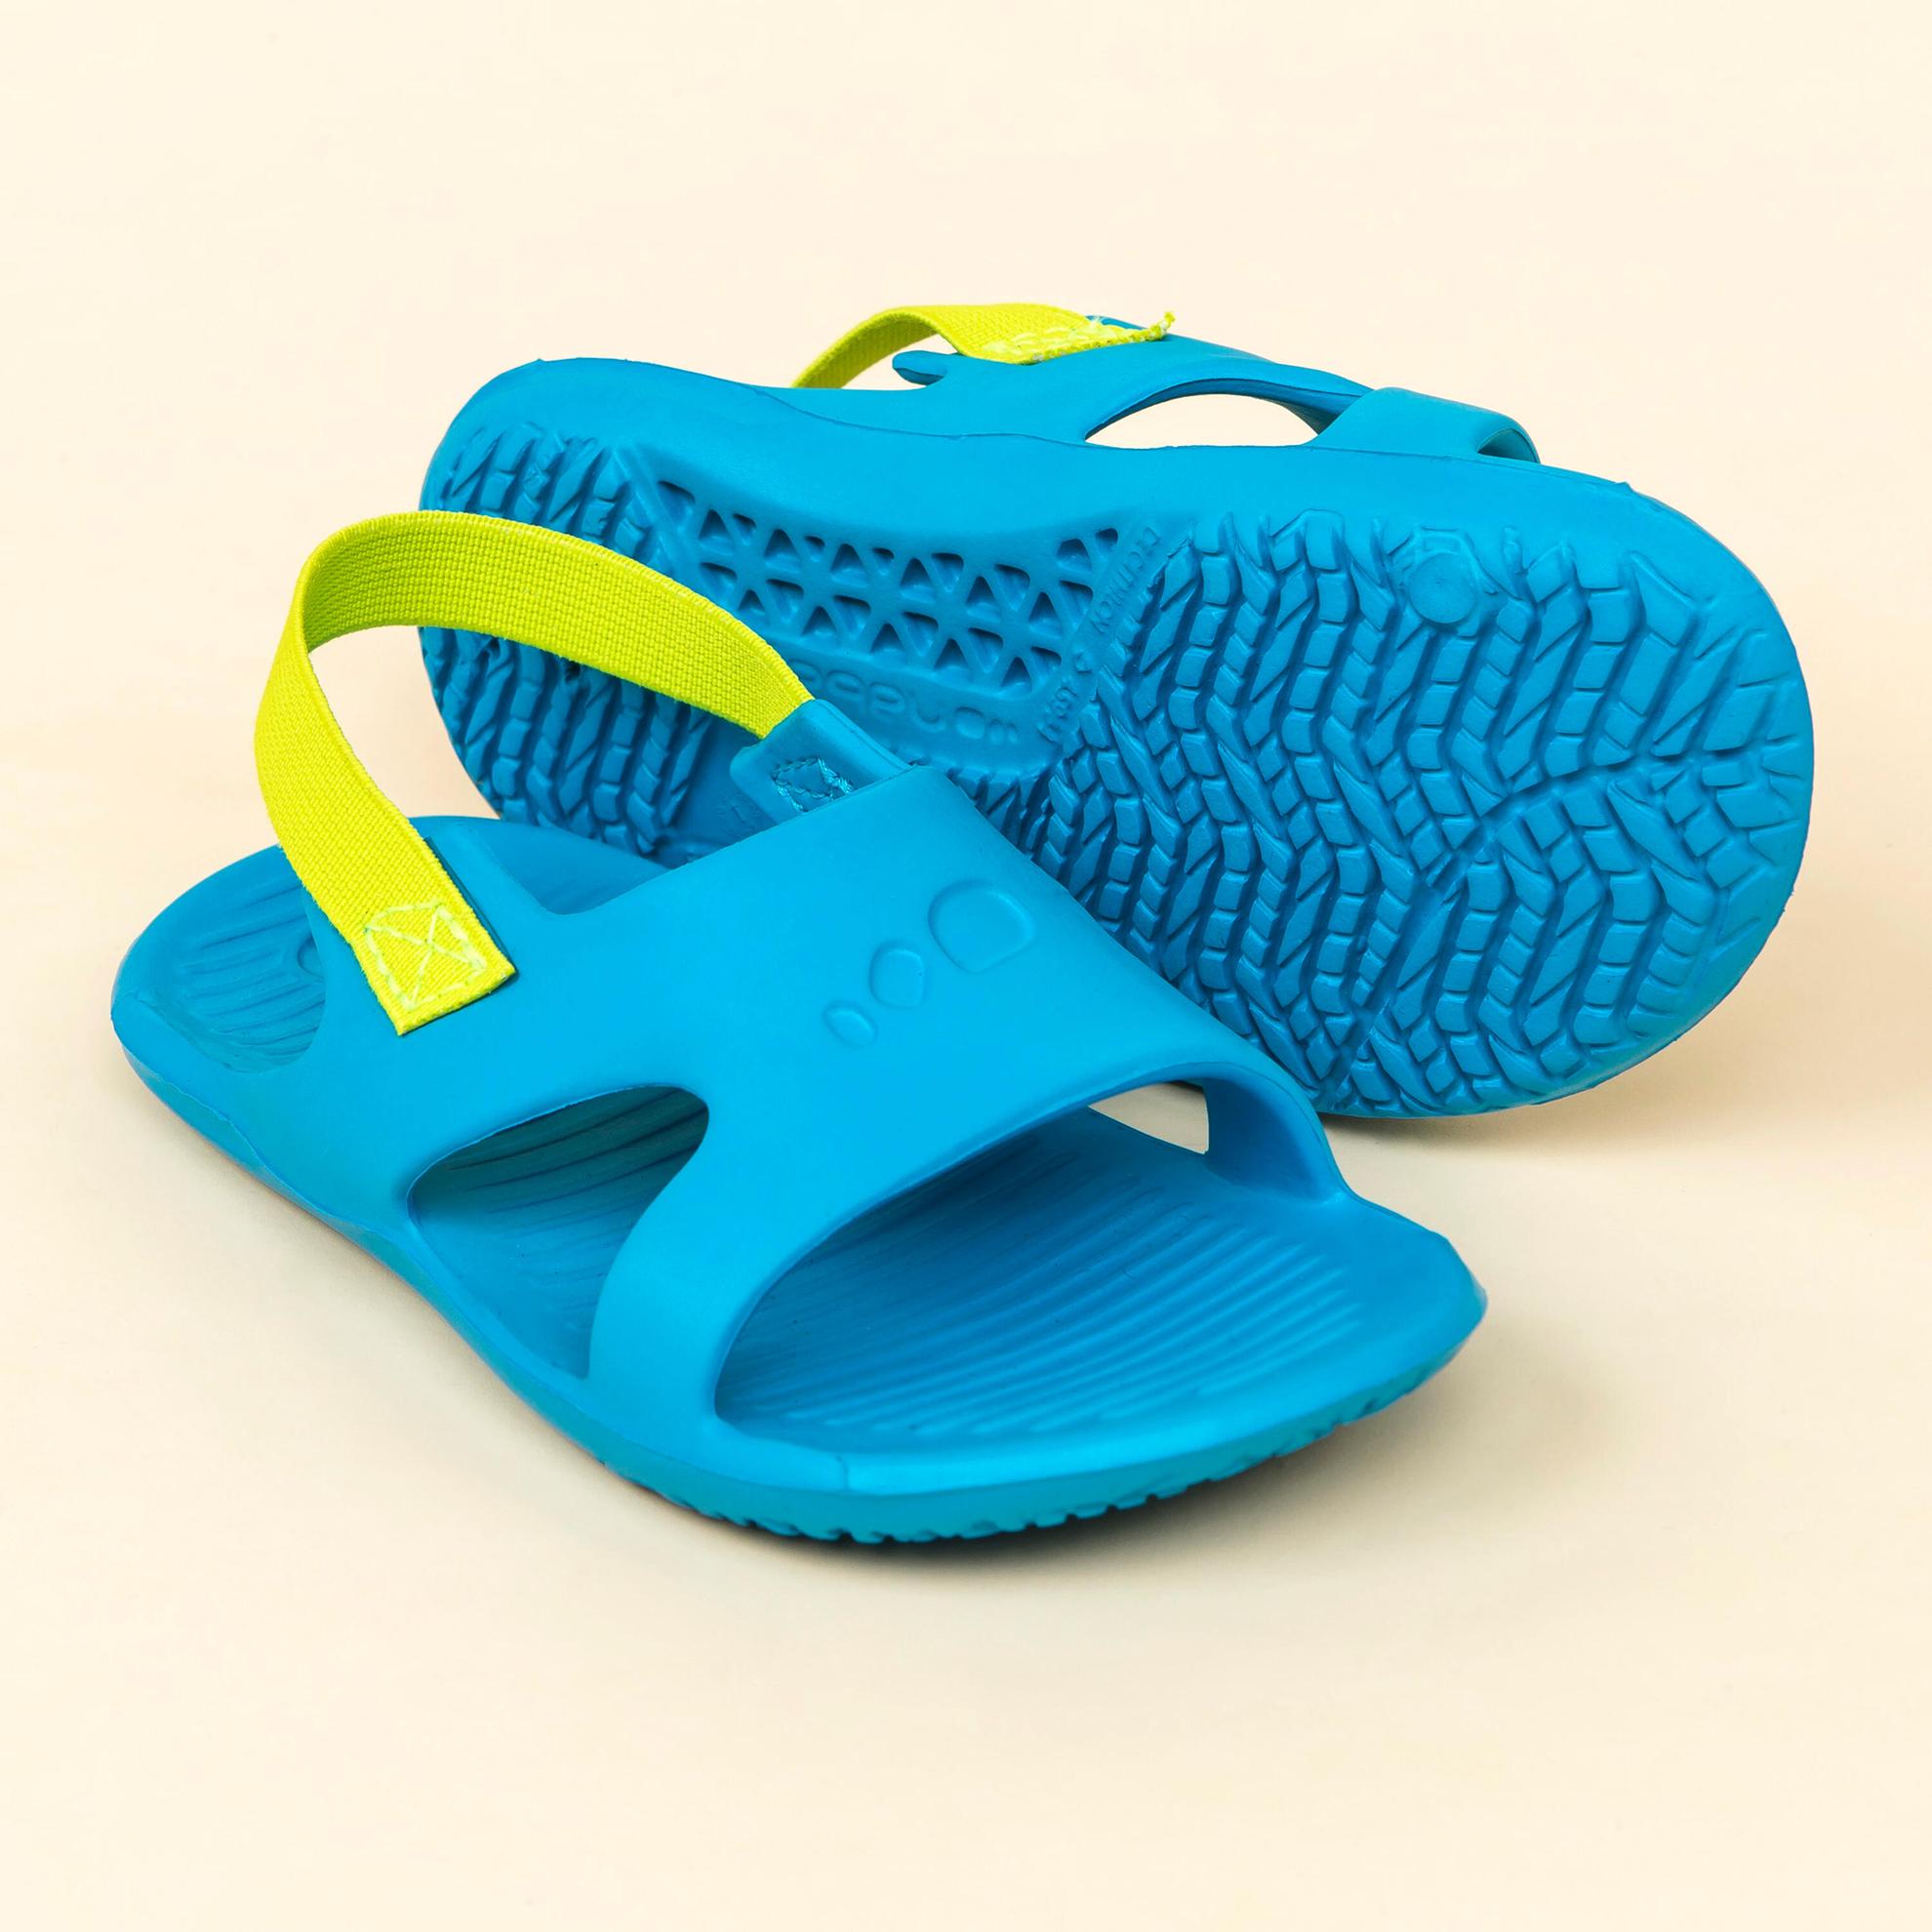 Chaussure Sandale Piscine Enfant SLAP 100 BASIC Bleu Vert offre à 59 Dh sur Decathlon